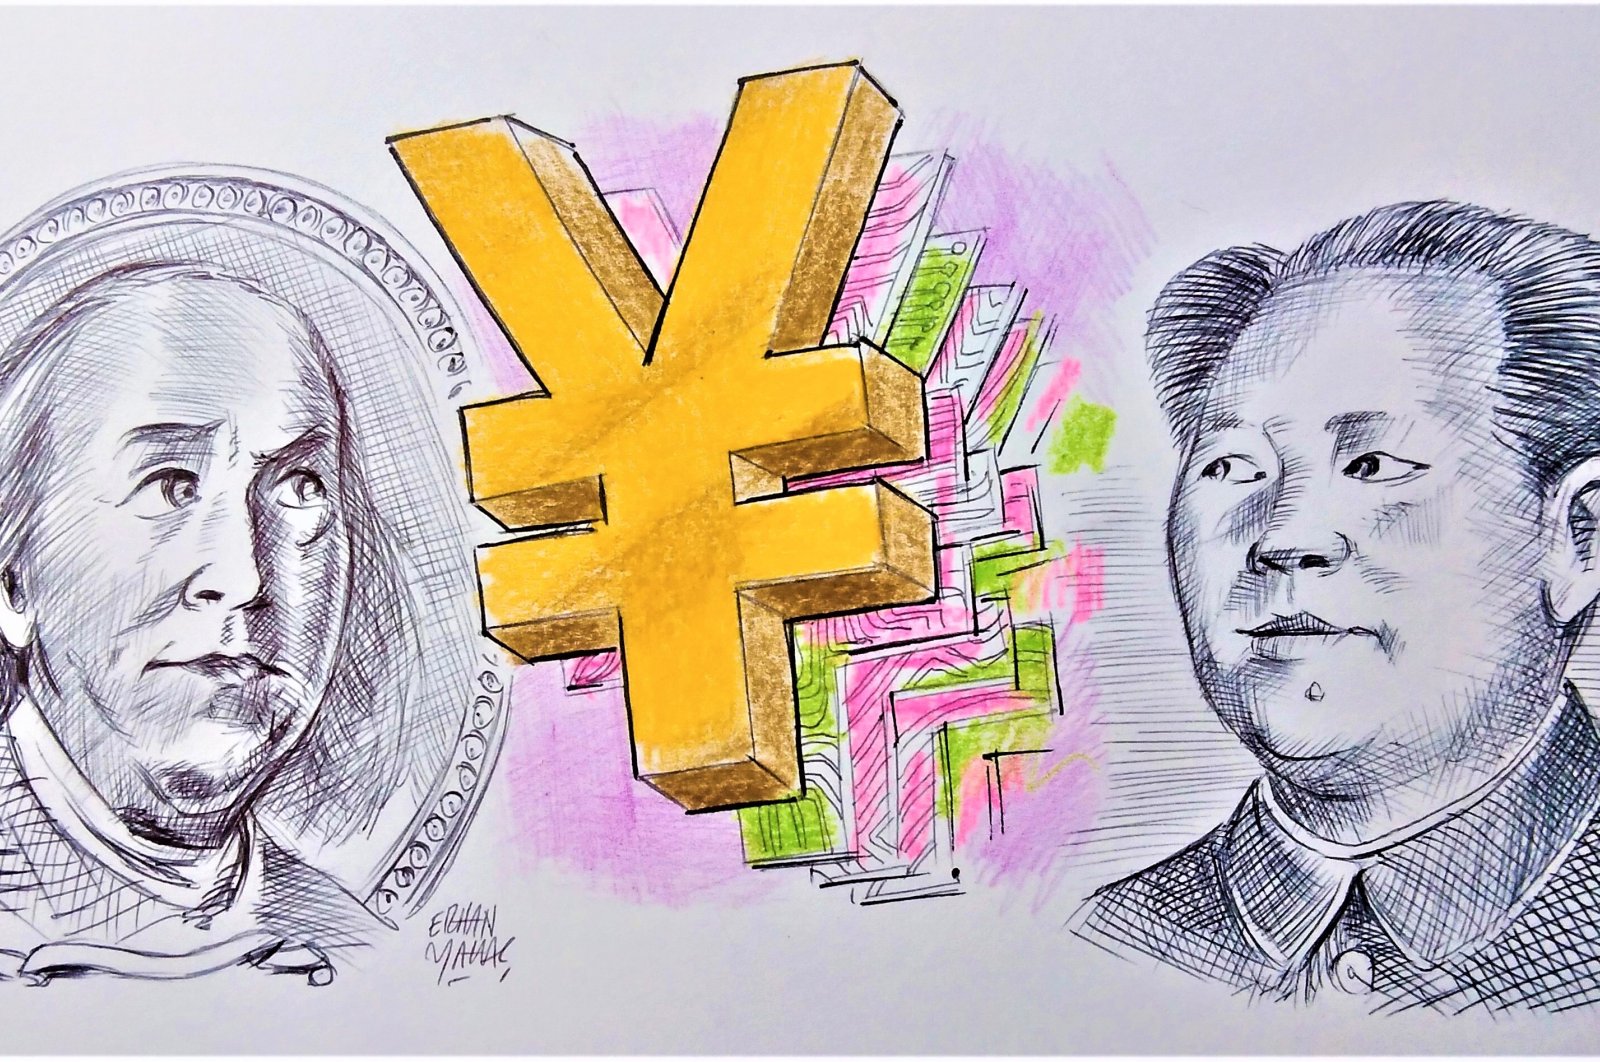 Yuan digital: Senjata rahasia atau keajaiban digital pascamodern?